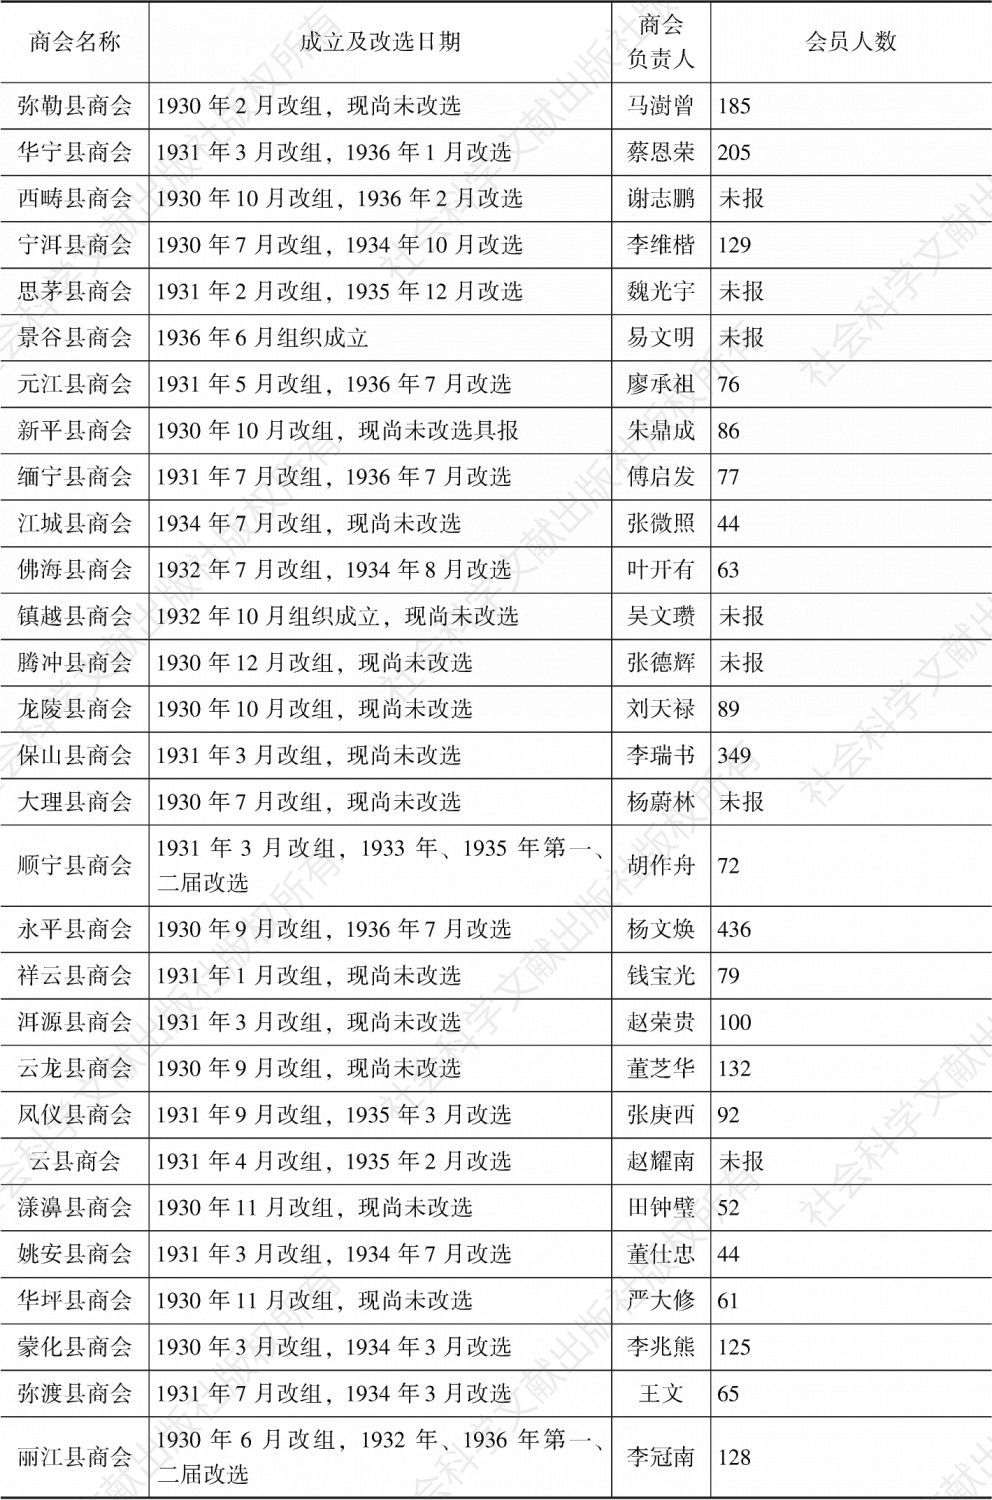 表3-1 1936年云南各地商会一览表-续表2